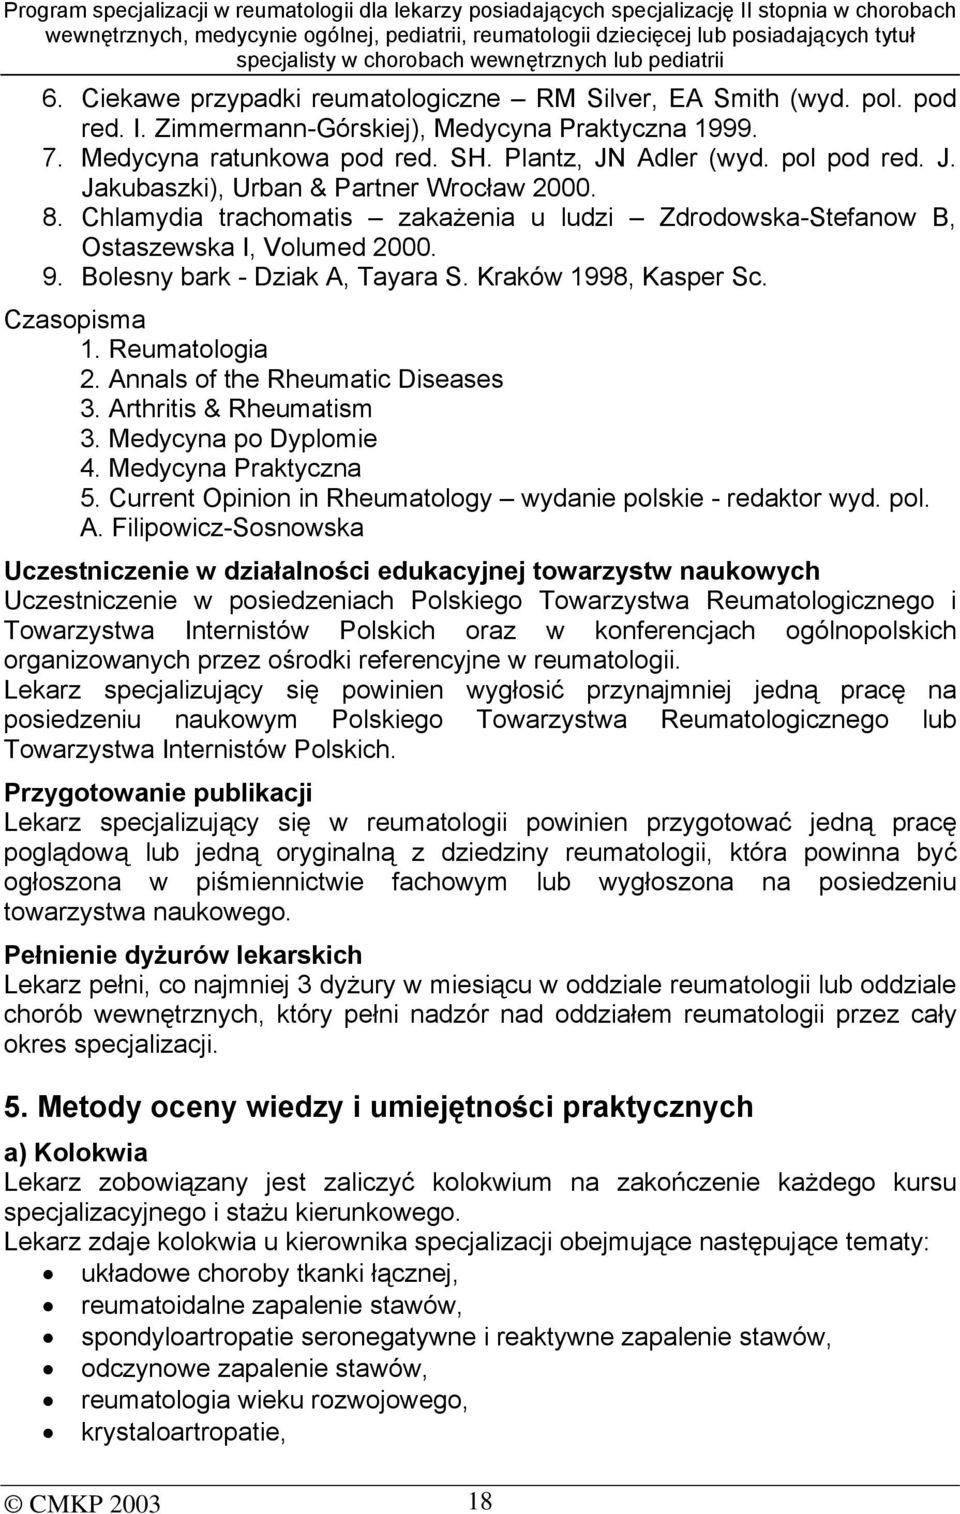 Kraków 1998, Kasper Sc. Czasopisma 1. Reumatologia 2. Annals of the Rheumatic Diseases 3. Arthritis & Rheumatism 3. Medycyna po Dyplomie 4. Medycyna Praktyczna 5.